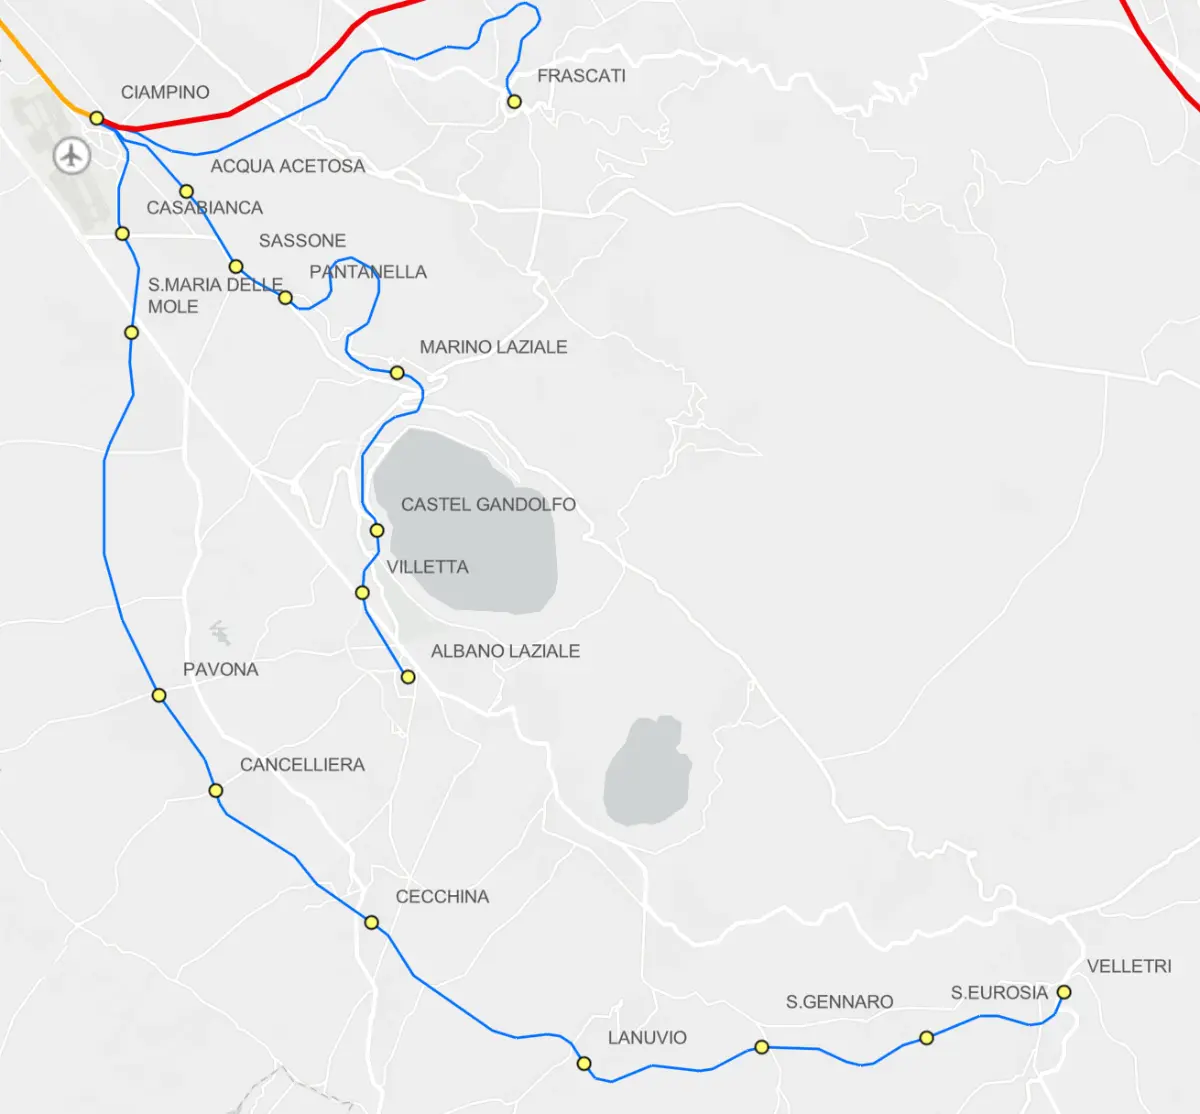 Mappa delle Linee ferroviarie dei Castelli Romani con relative fermate